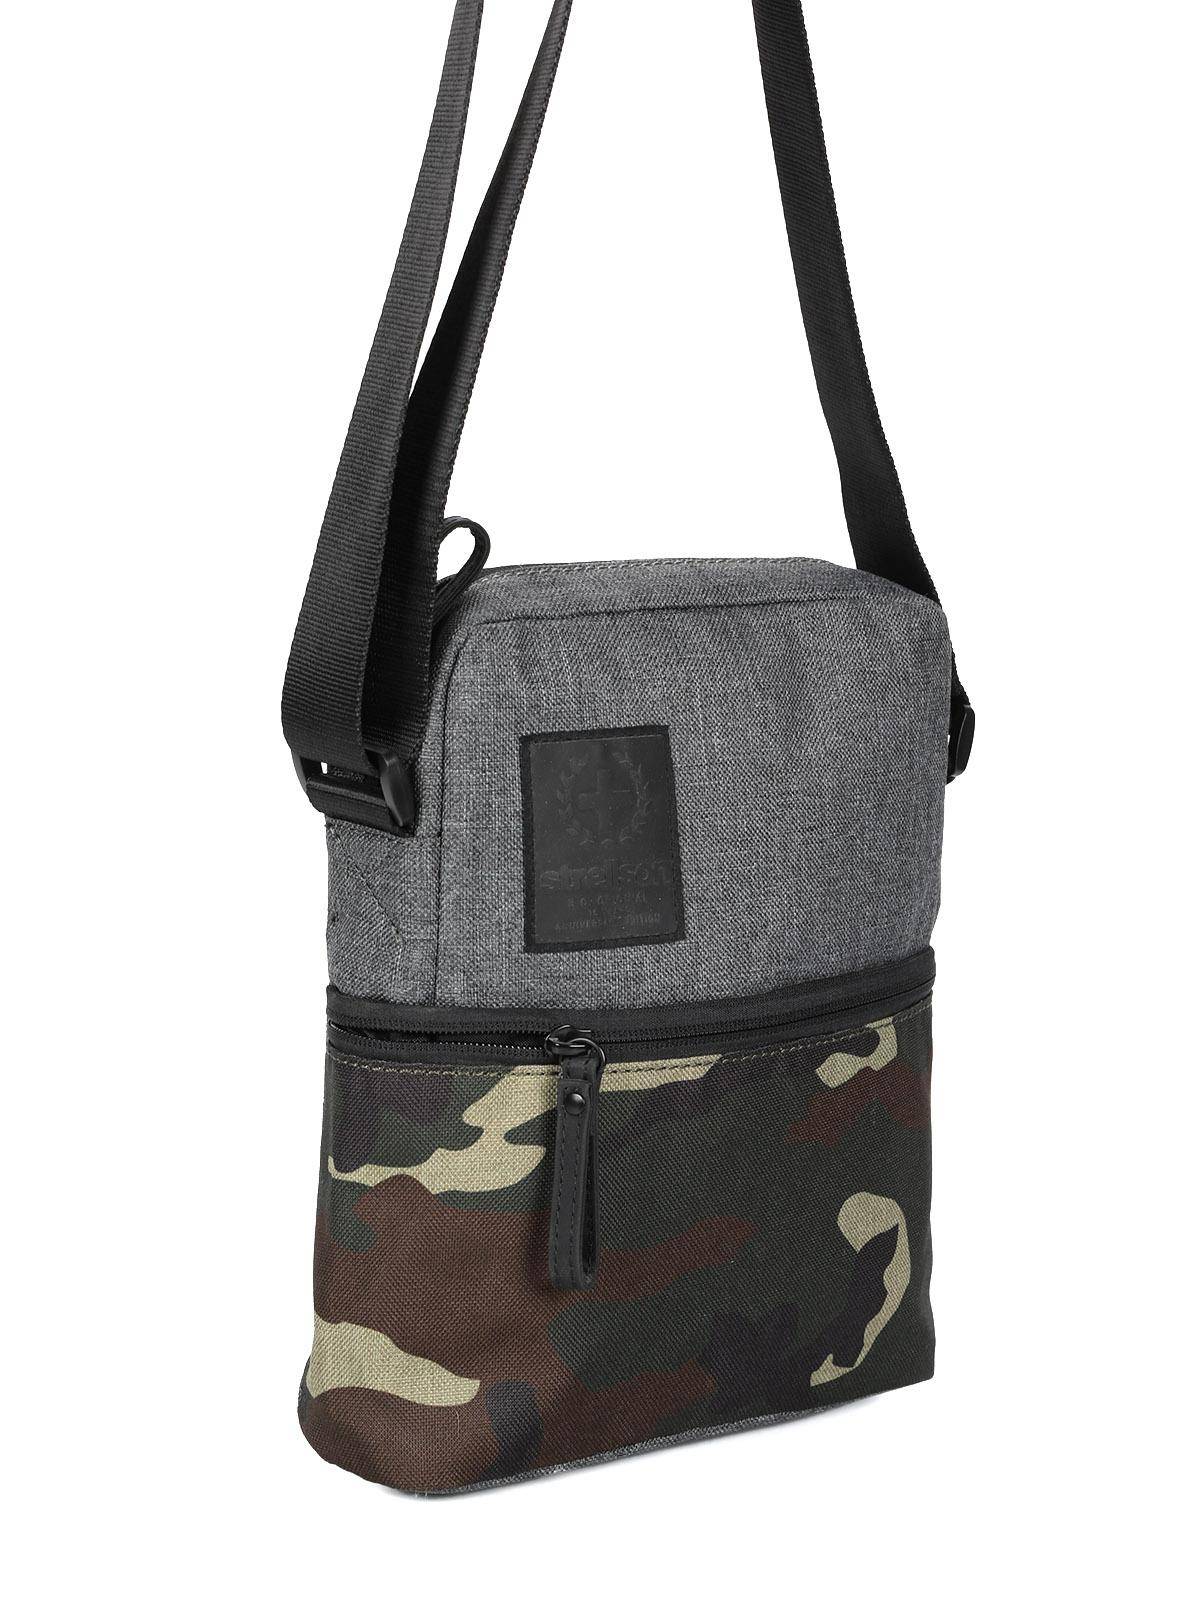 Городская сумка Strellson Bags Swiss cross 2 shoulderbag xsvz 4010002437, цвет серый, размер ONE SIZE - фото 3